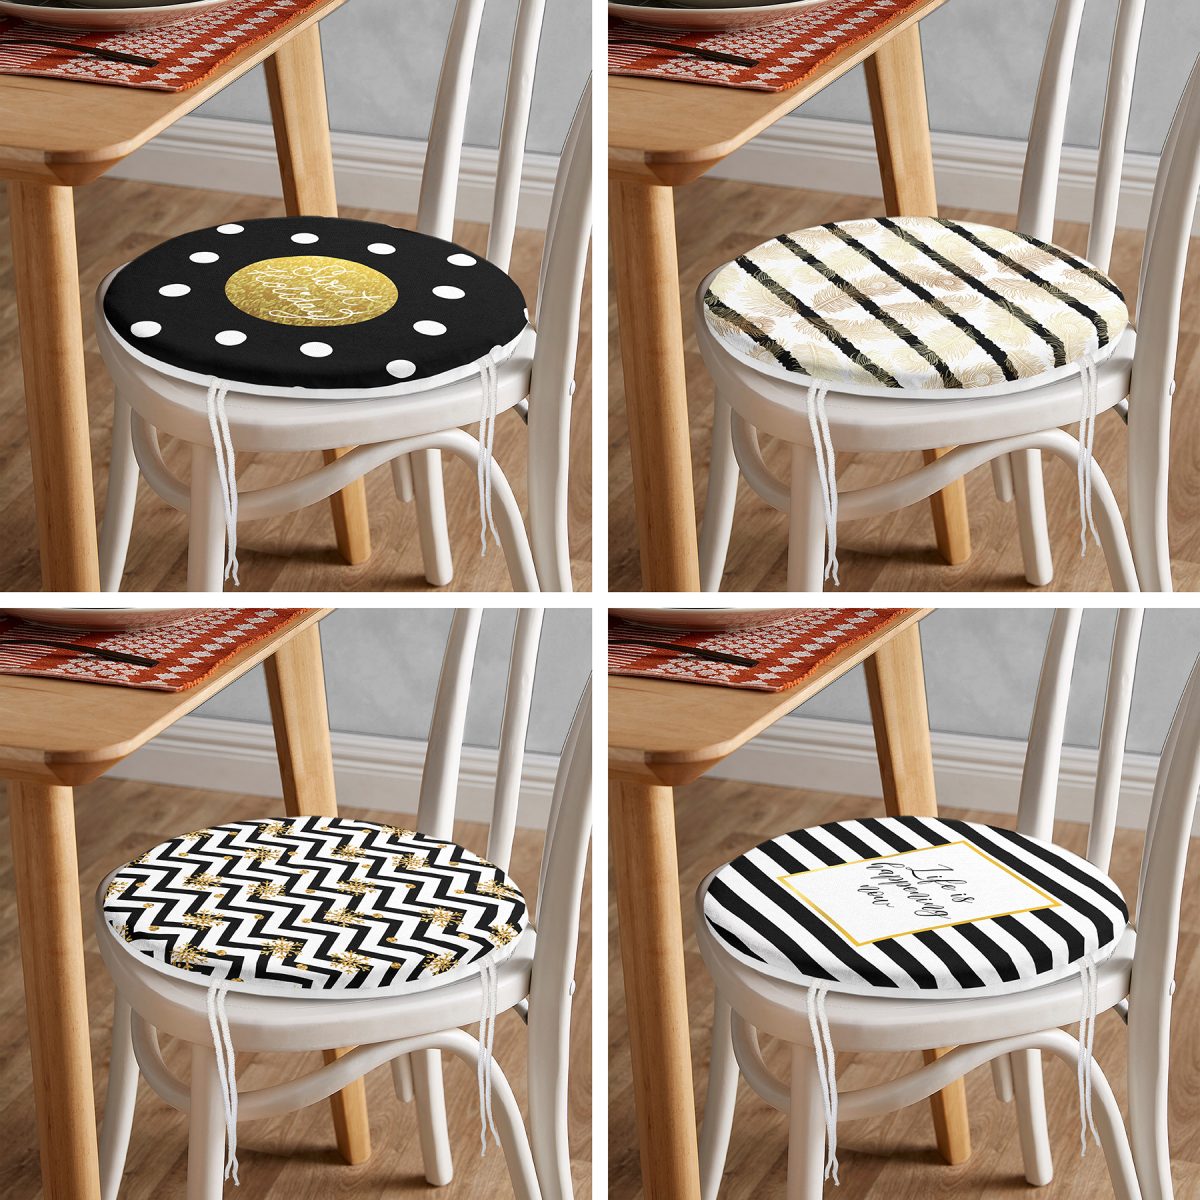 4'lü Gold Yazılı Geometrik Desenli Yuvarlak Fermuarlı Sandalye Minderi Seti Realhomes